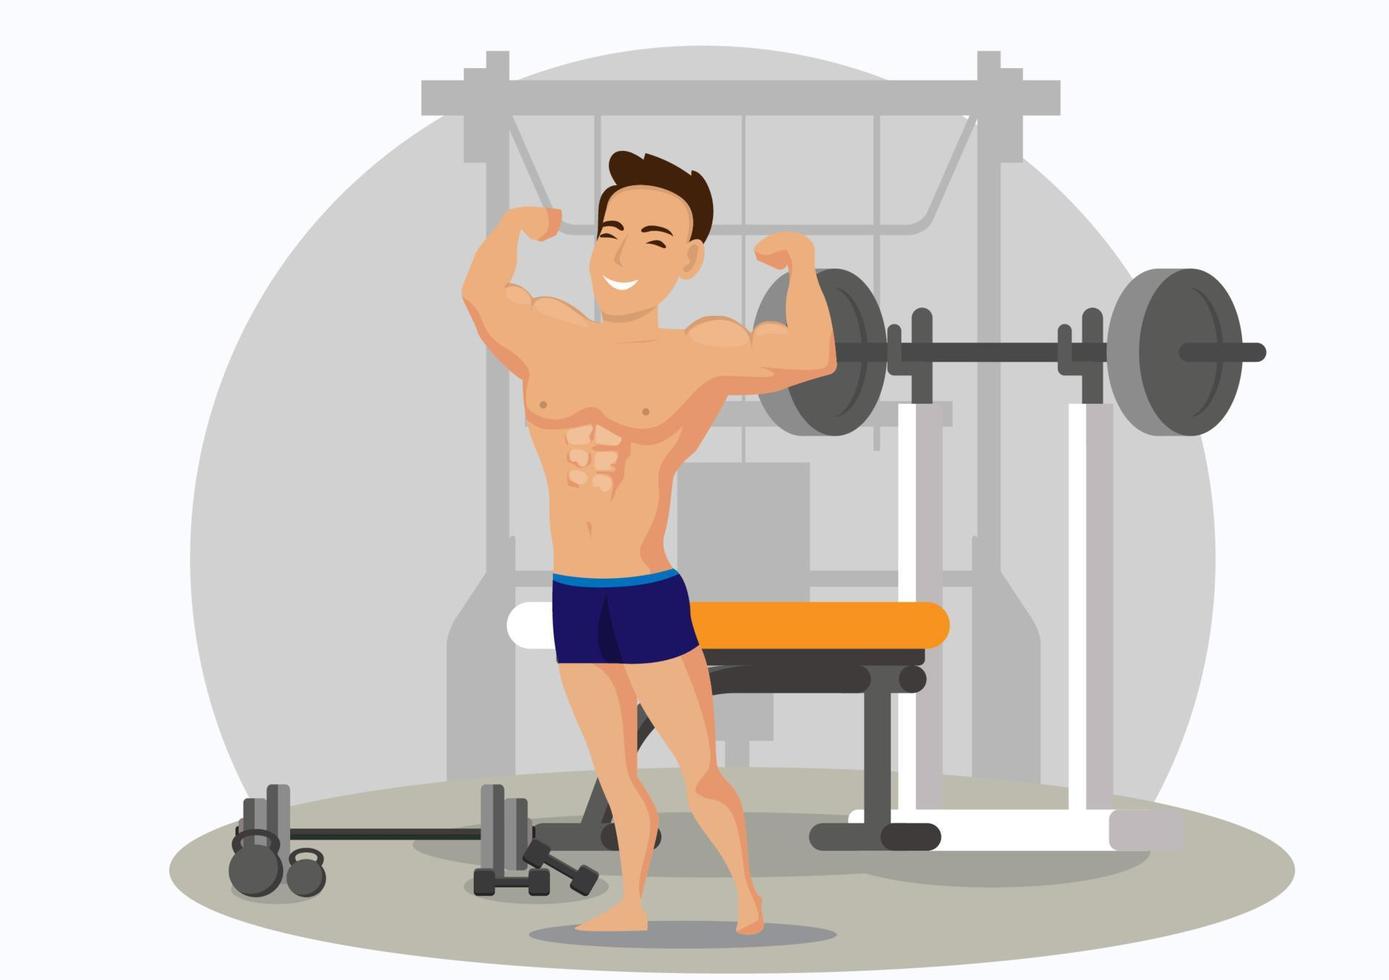 Ein junger Mann zeigt seine Muskeln, an denen er im Fitnessraum trainiert hat. gesunder aktiver Lebensstil. Cartoon-Illustrationsvektor im flachen Stil vektor